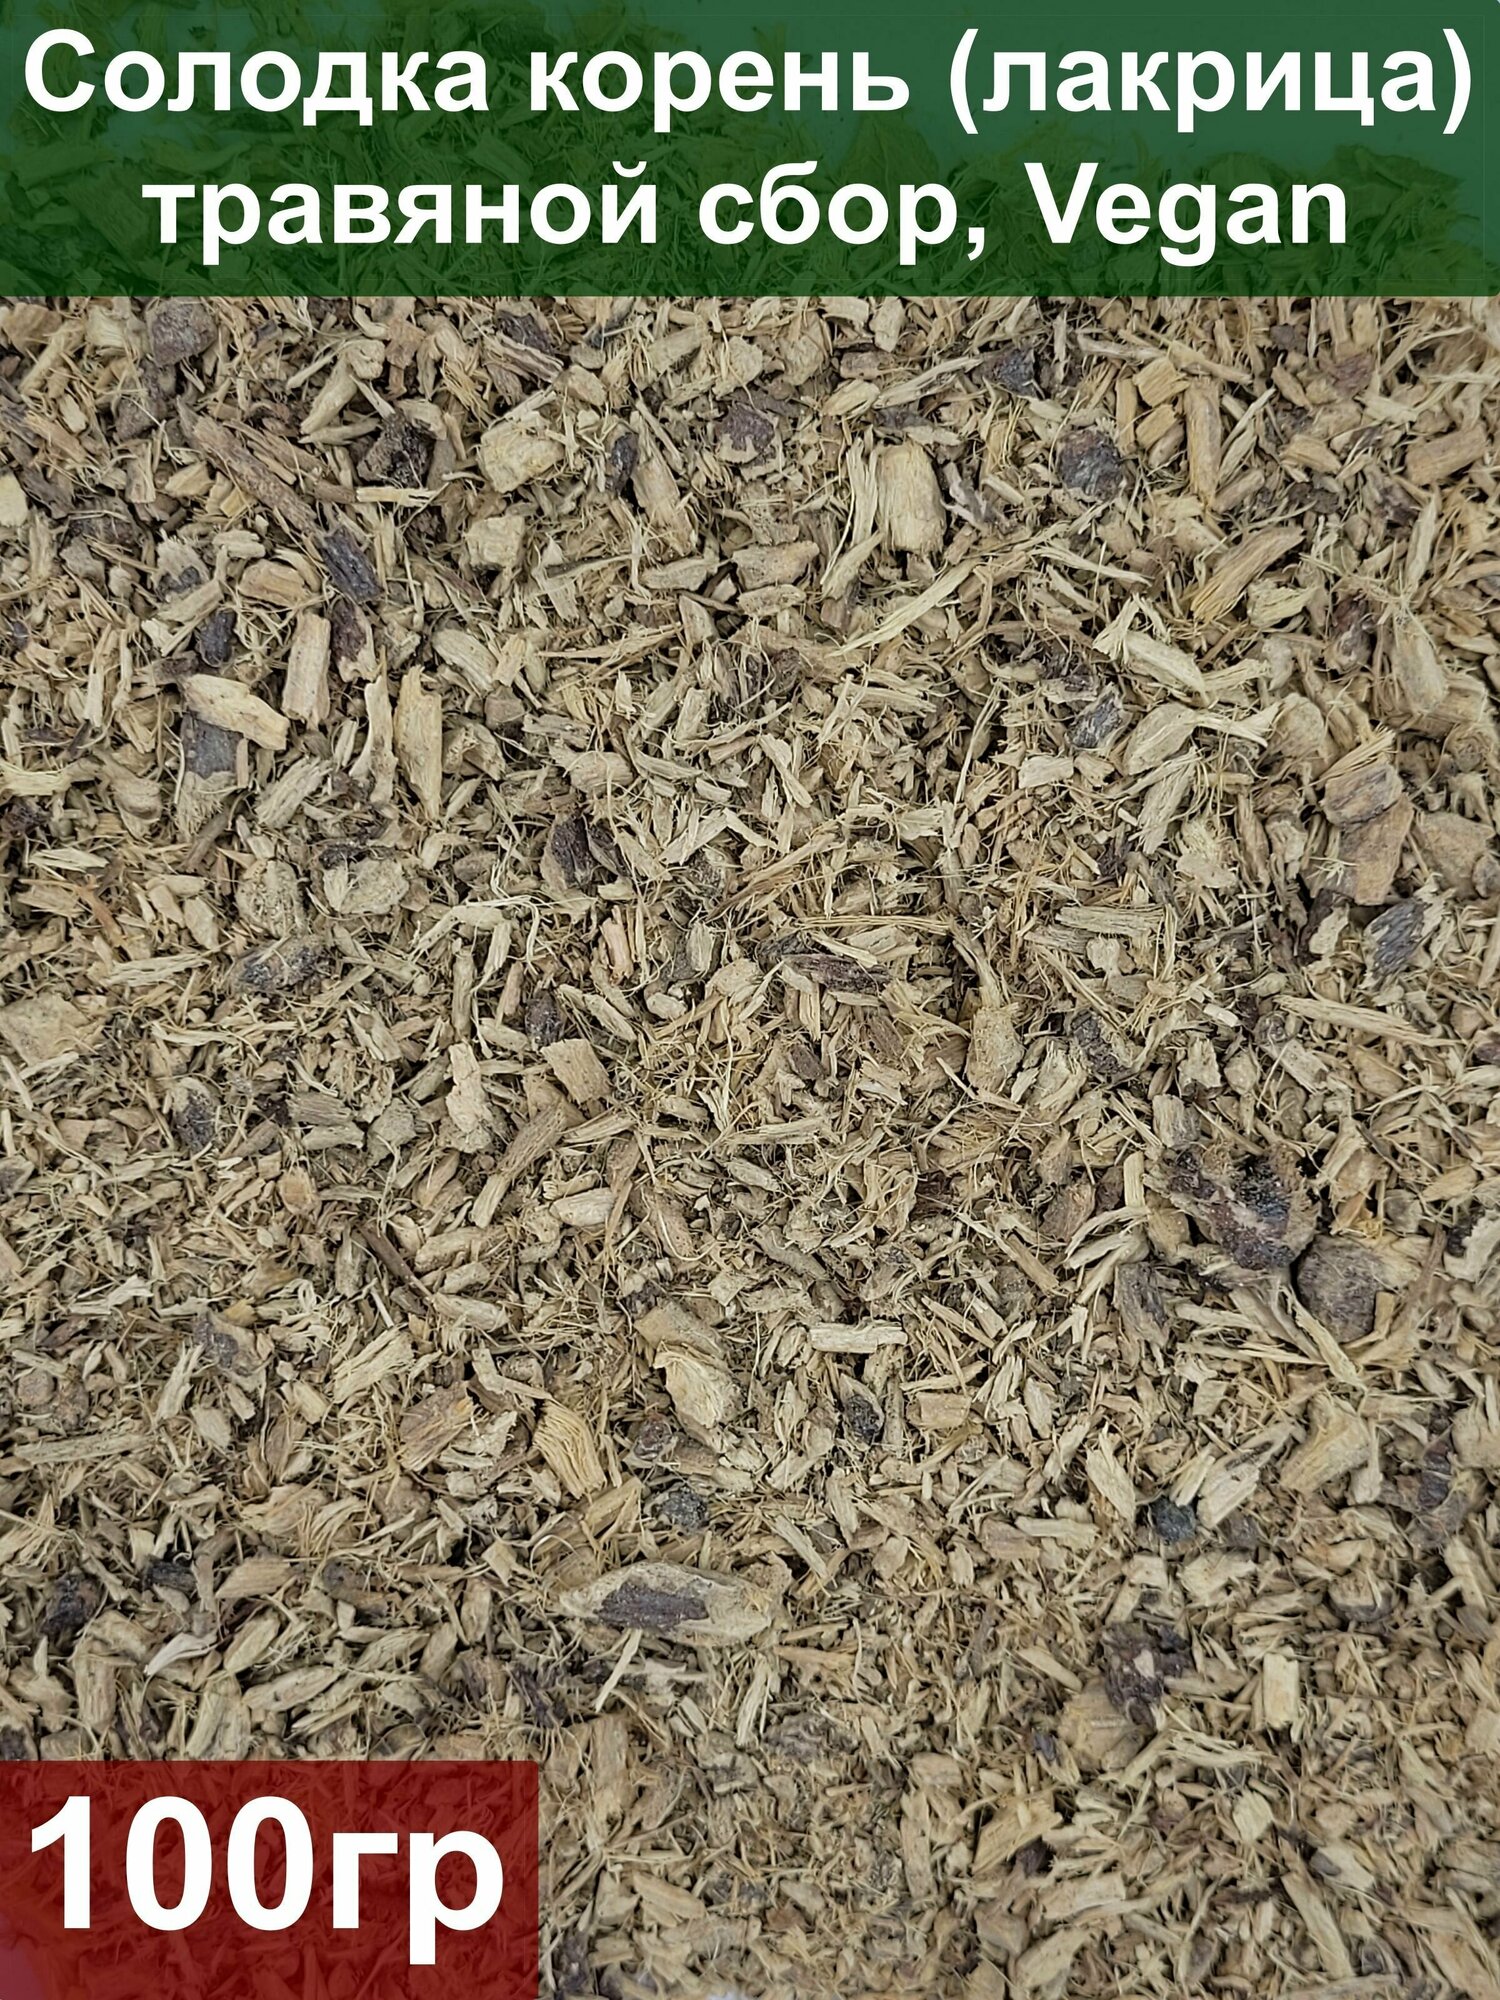 Солодка корень (лакрица) 100 гр травяной сбор Vegan